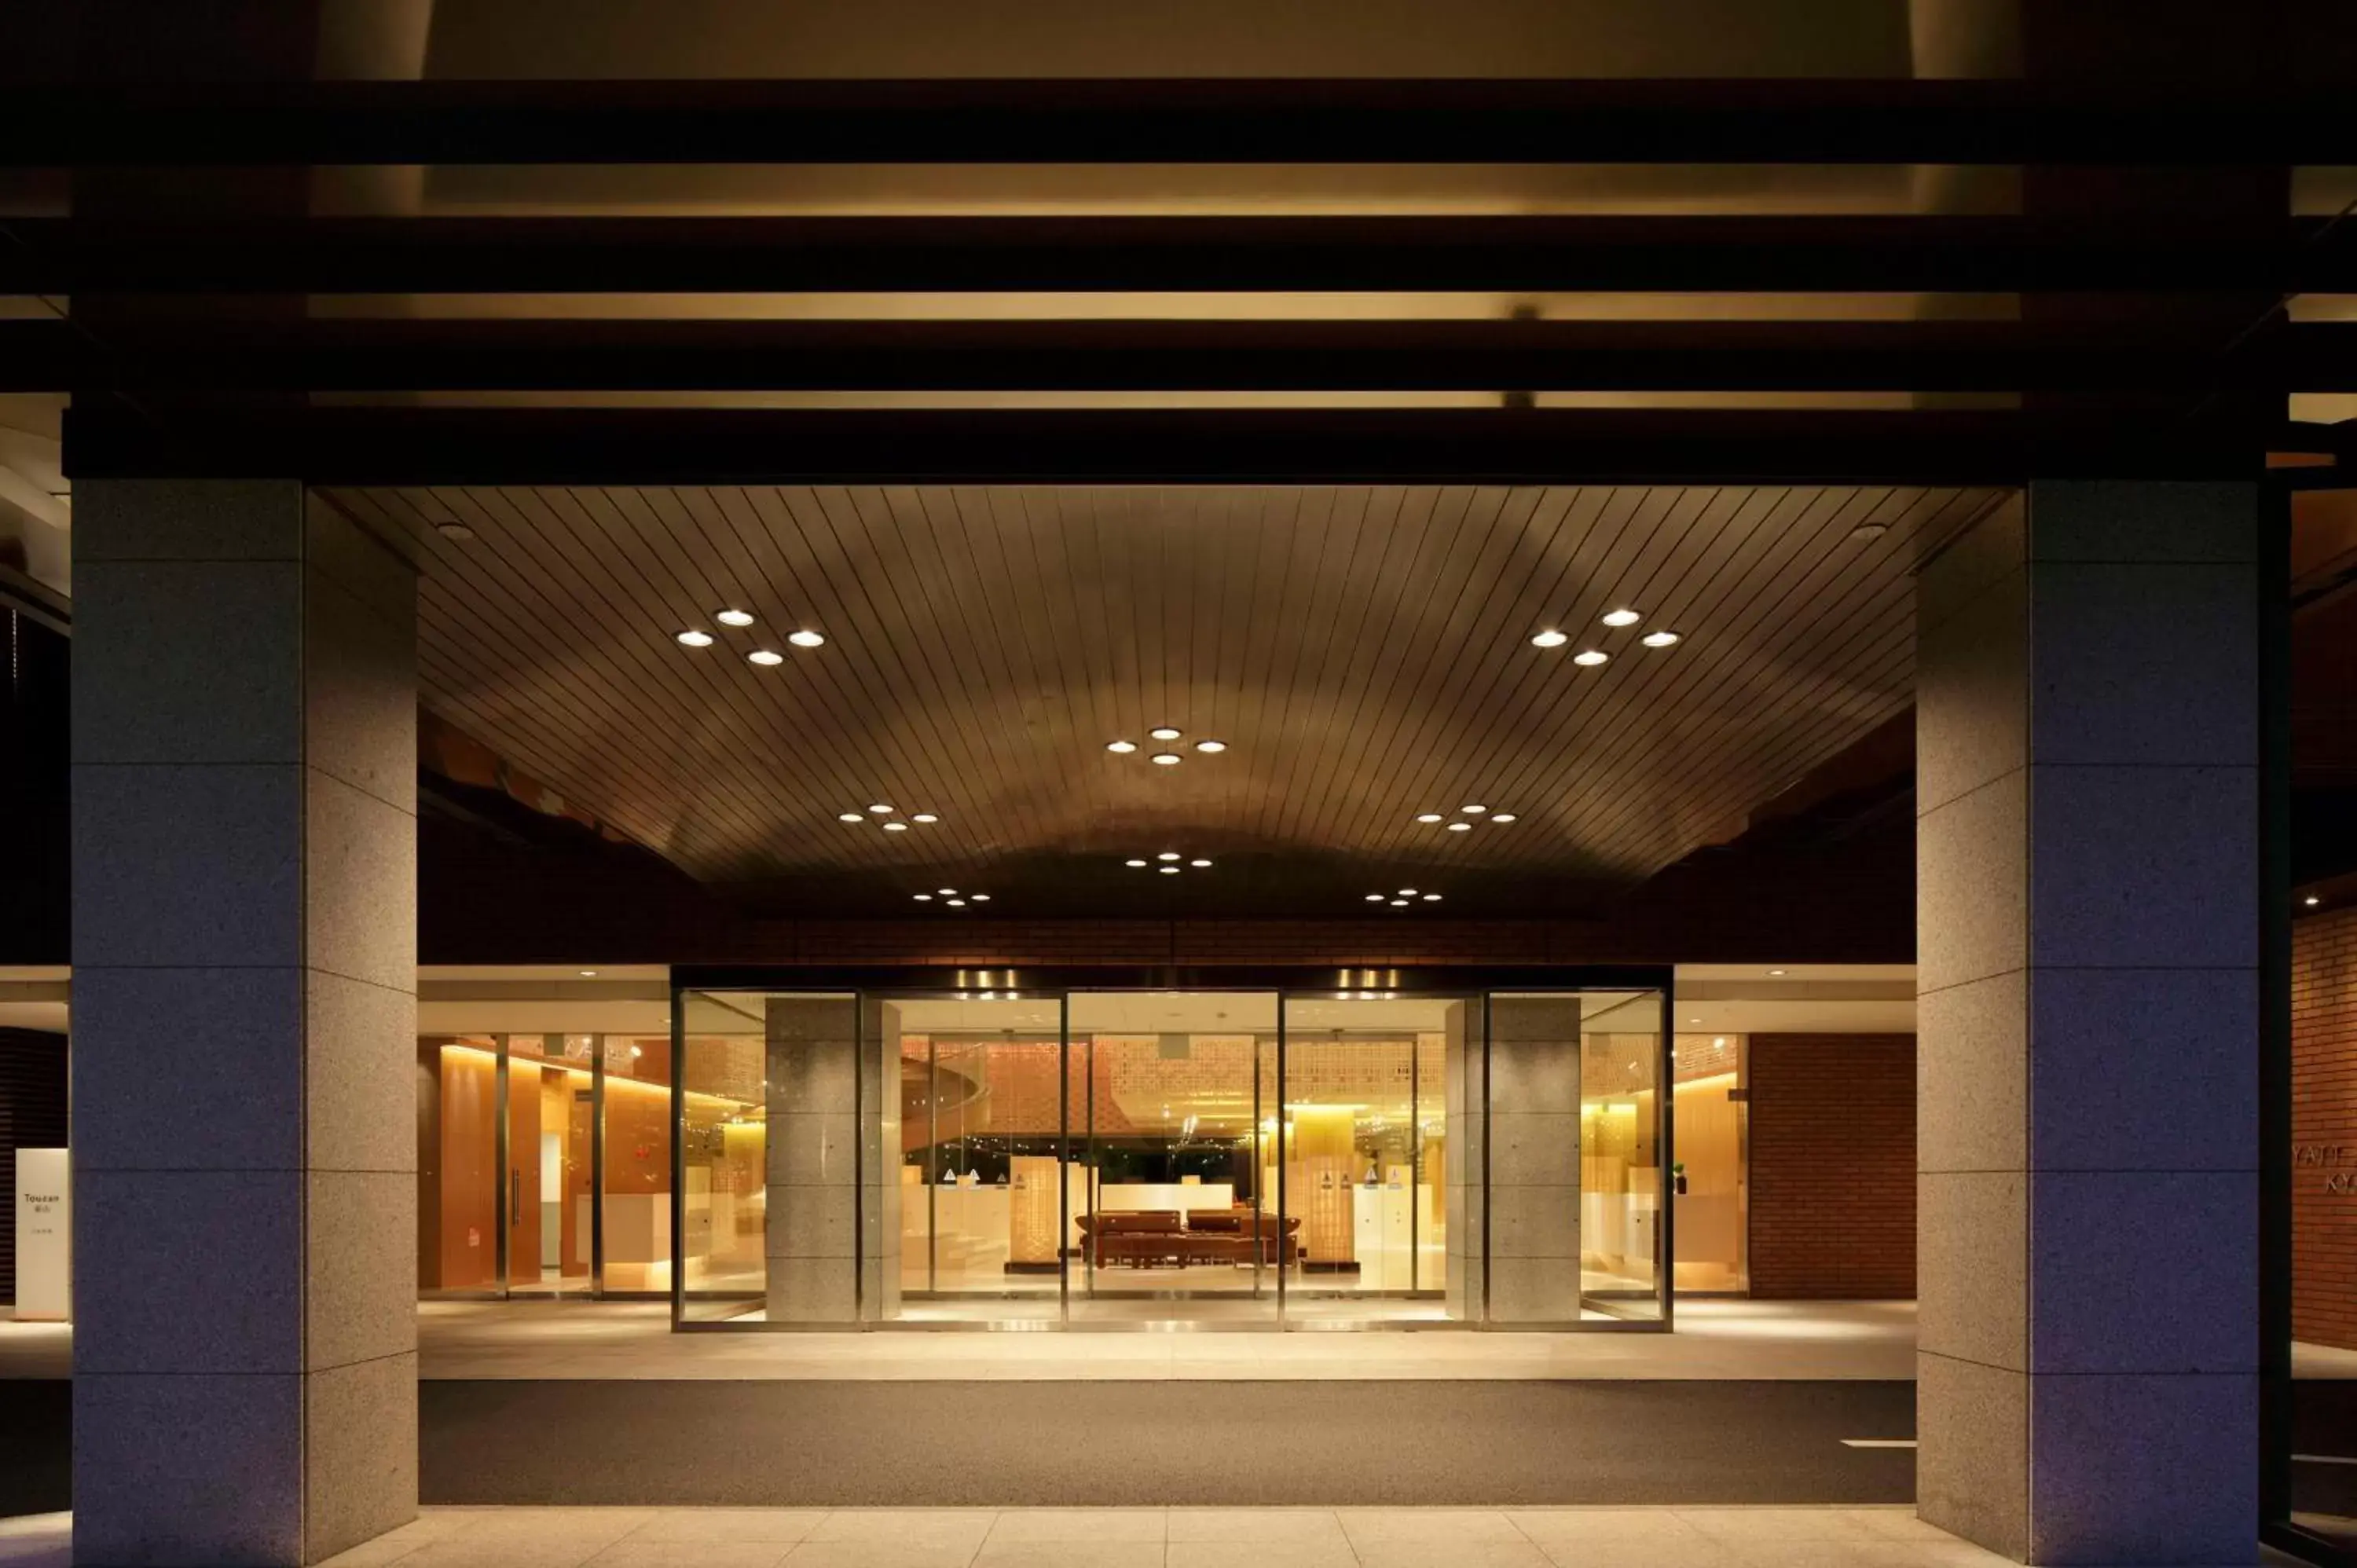 Lobby or reception in Hyatt Regency Kyoto